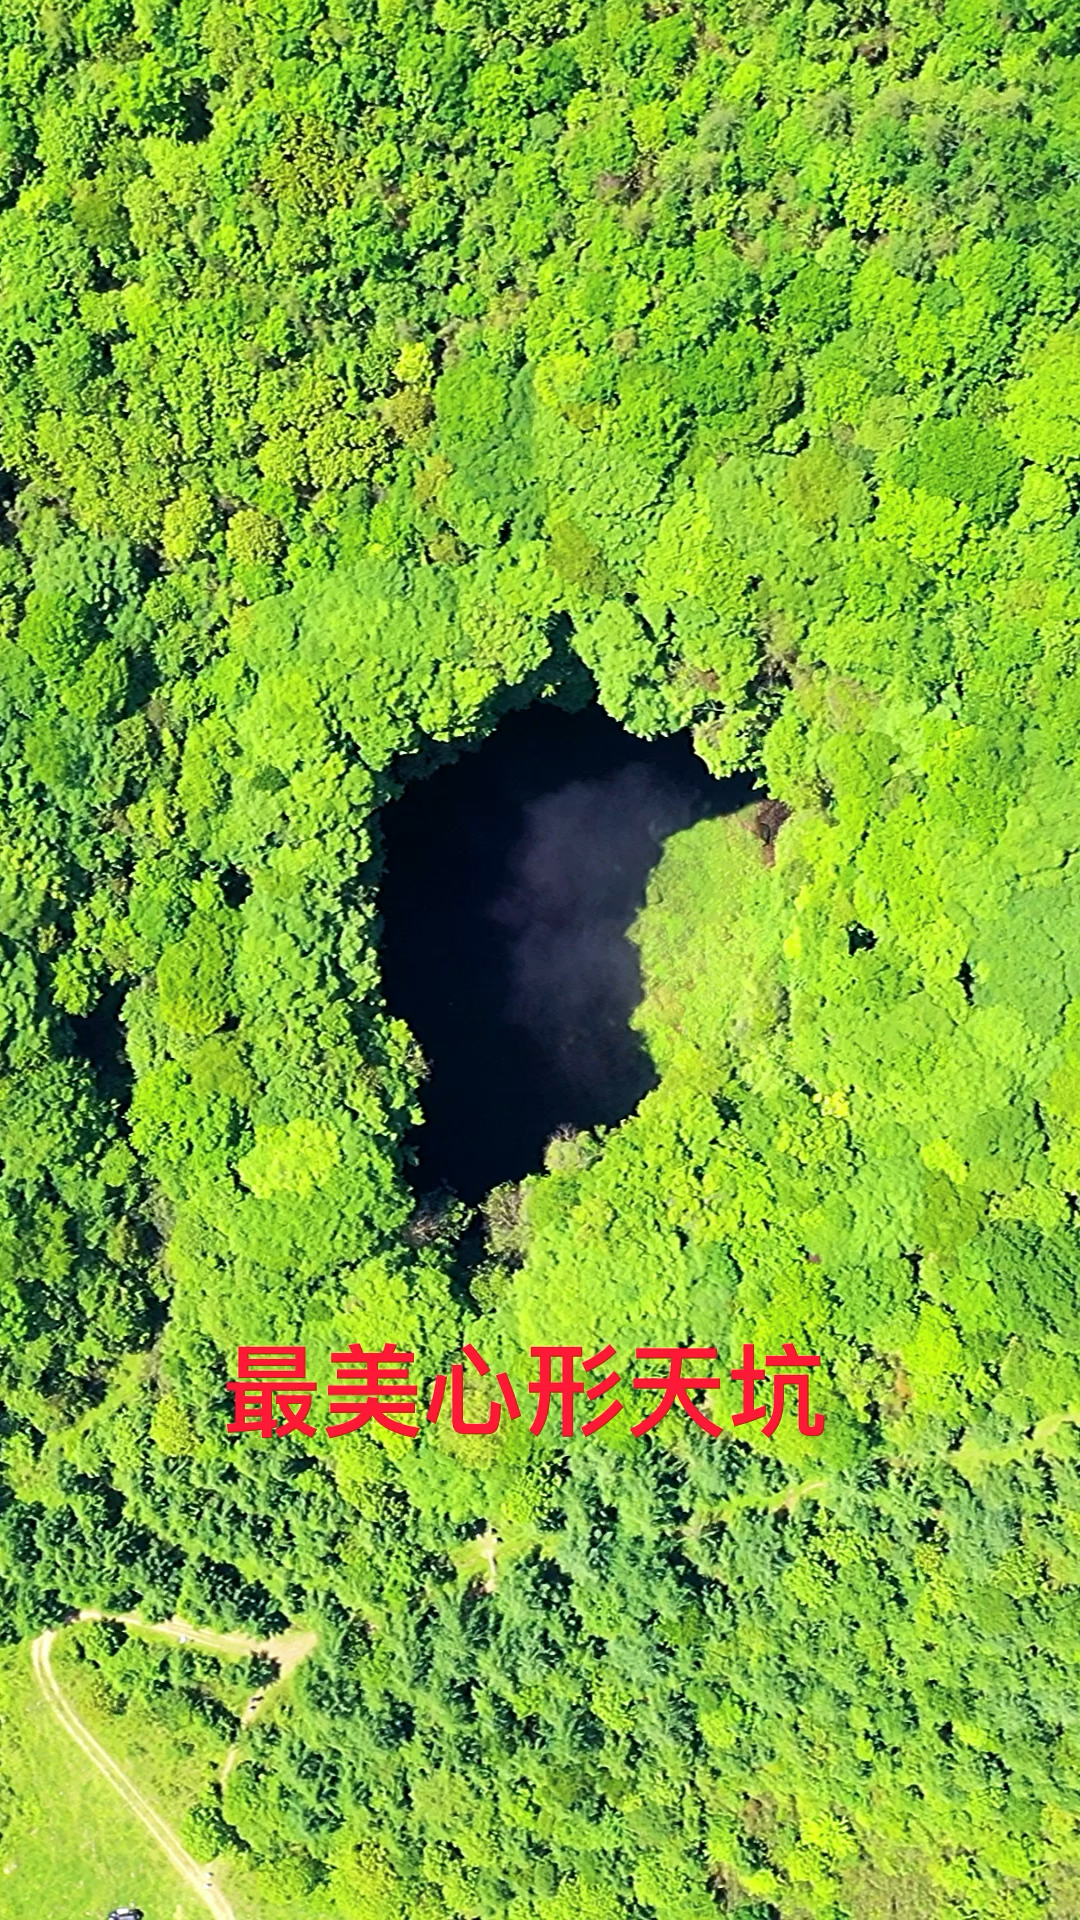 天悬天坑位于汉中市镇巴县三元镇双河村被称为最美心形天坑